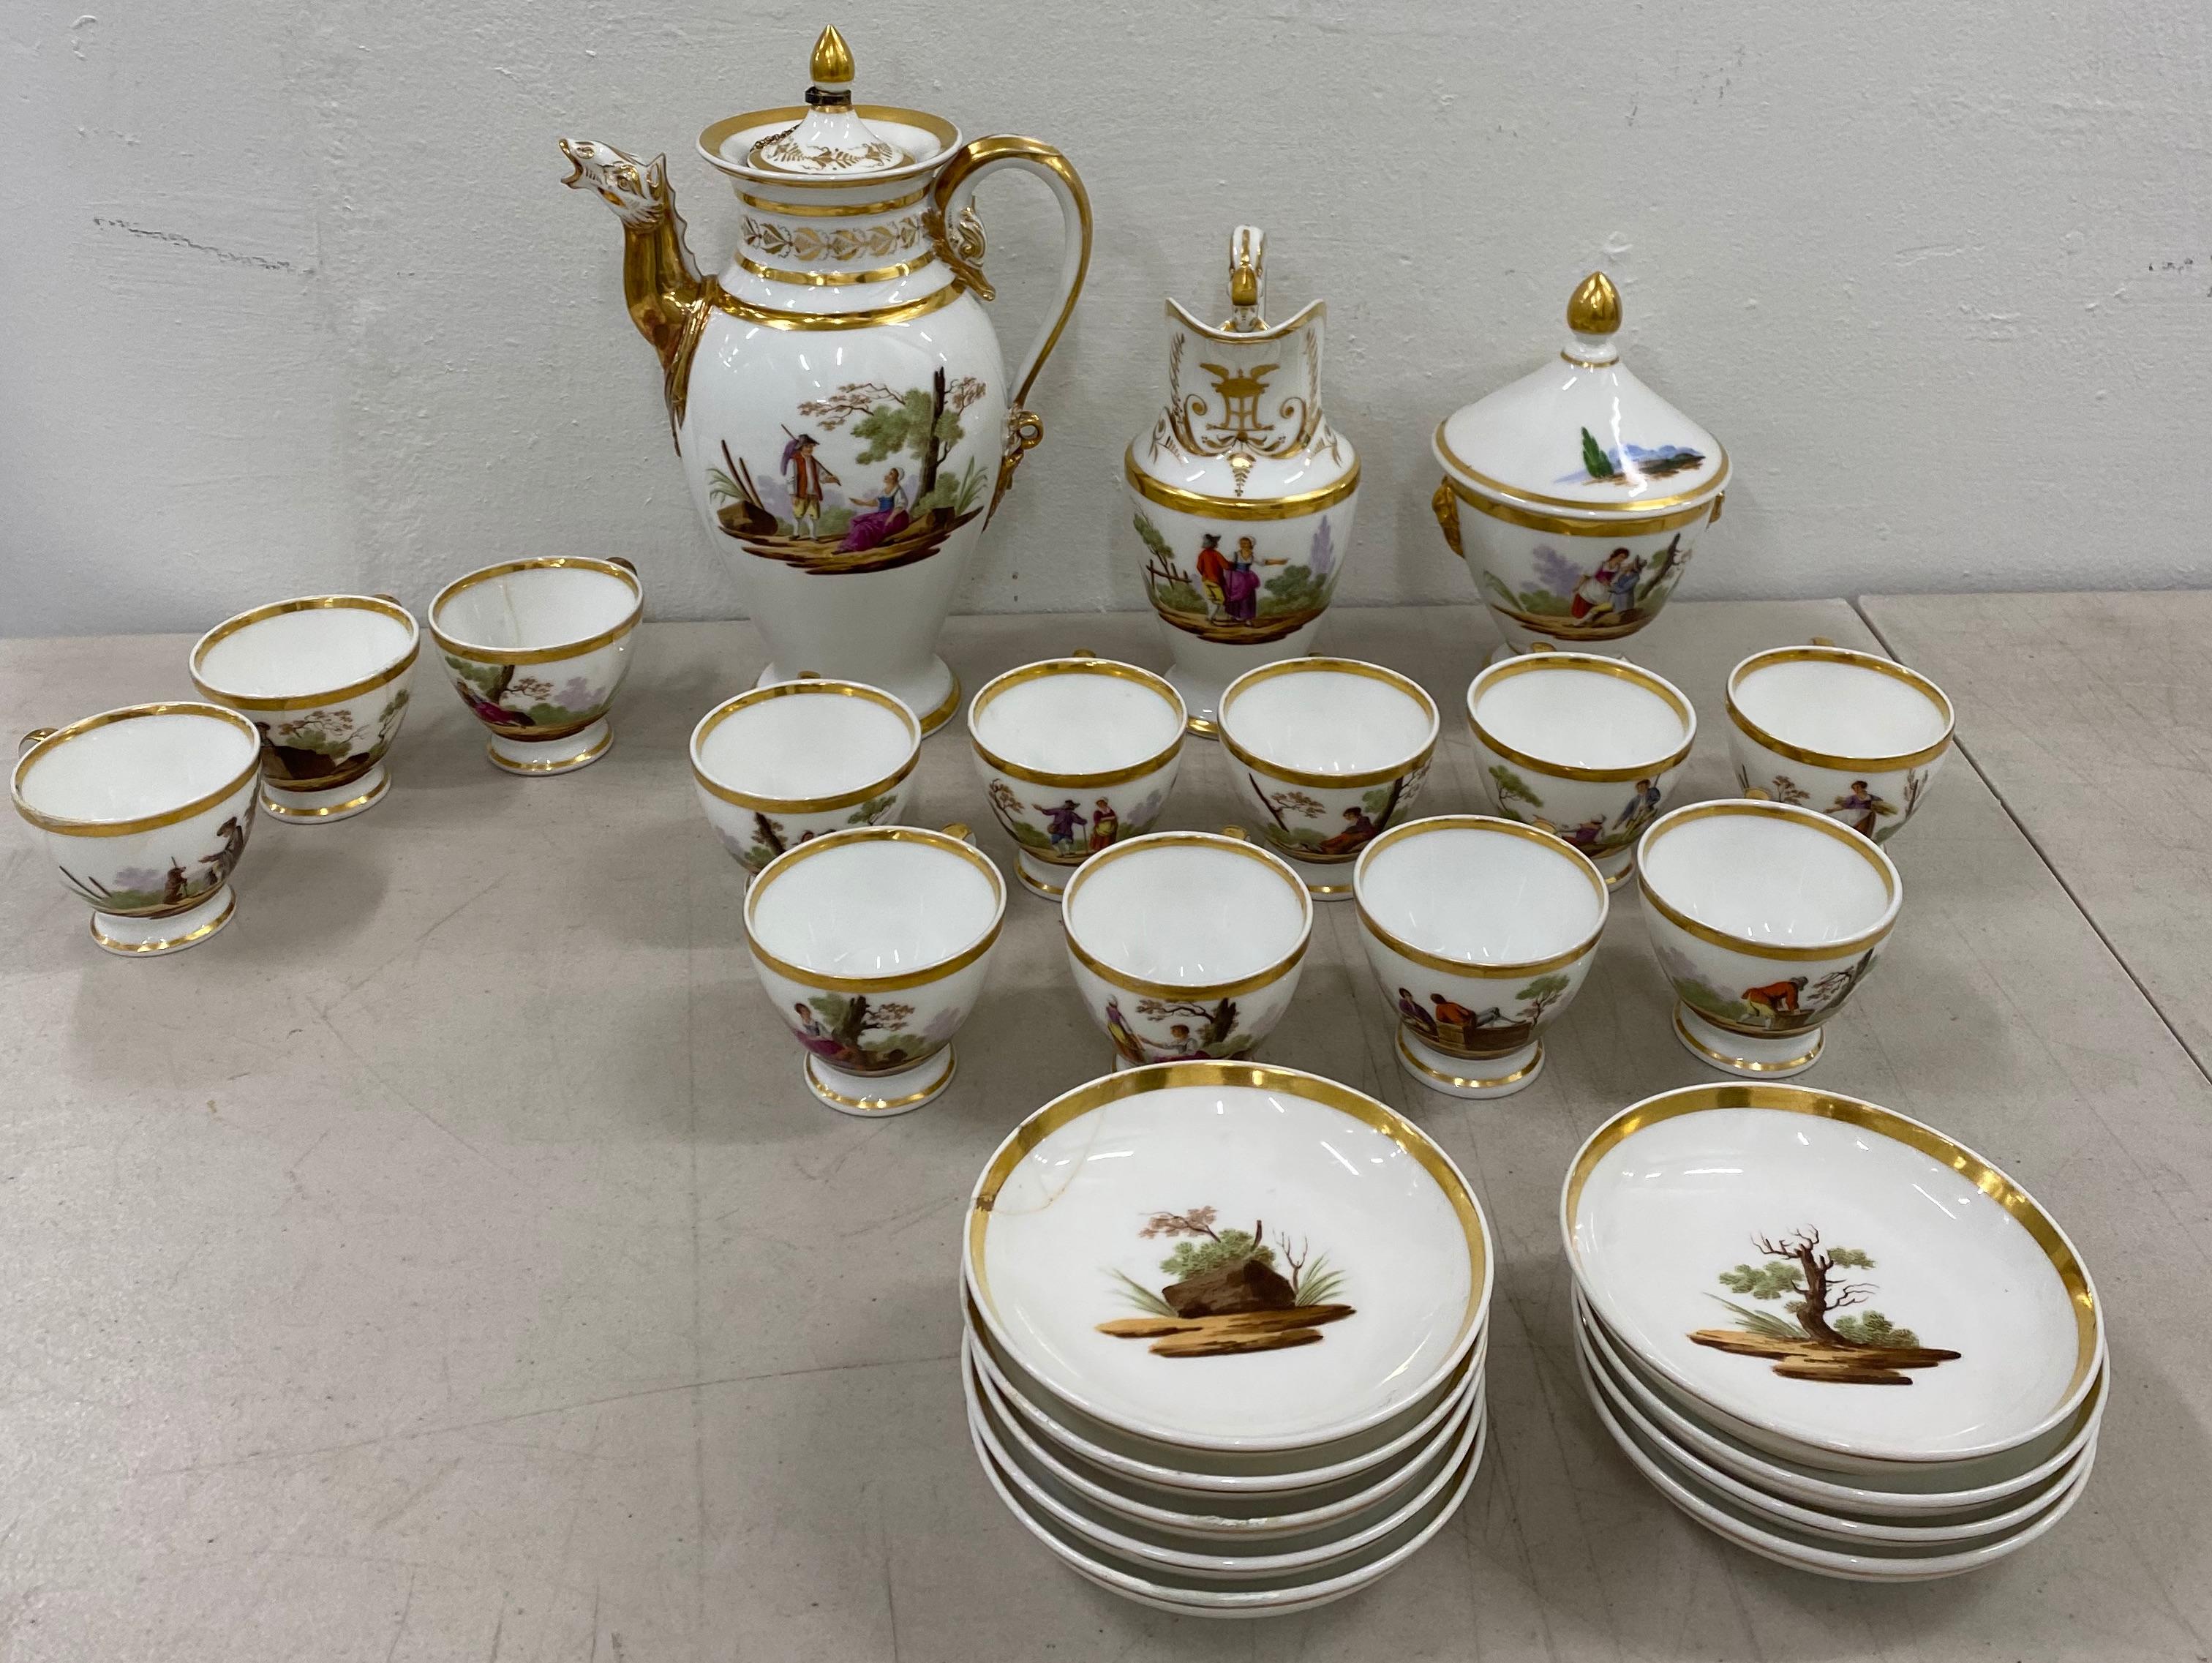 18th century hand painted porcelain tea set

Antique 18th century hand painted tea service (incomplete)

Tea pot 6